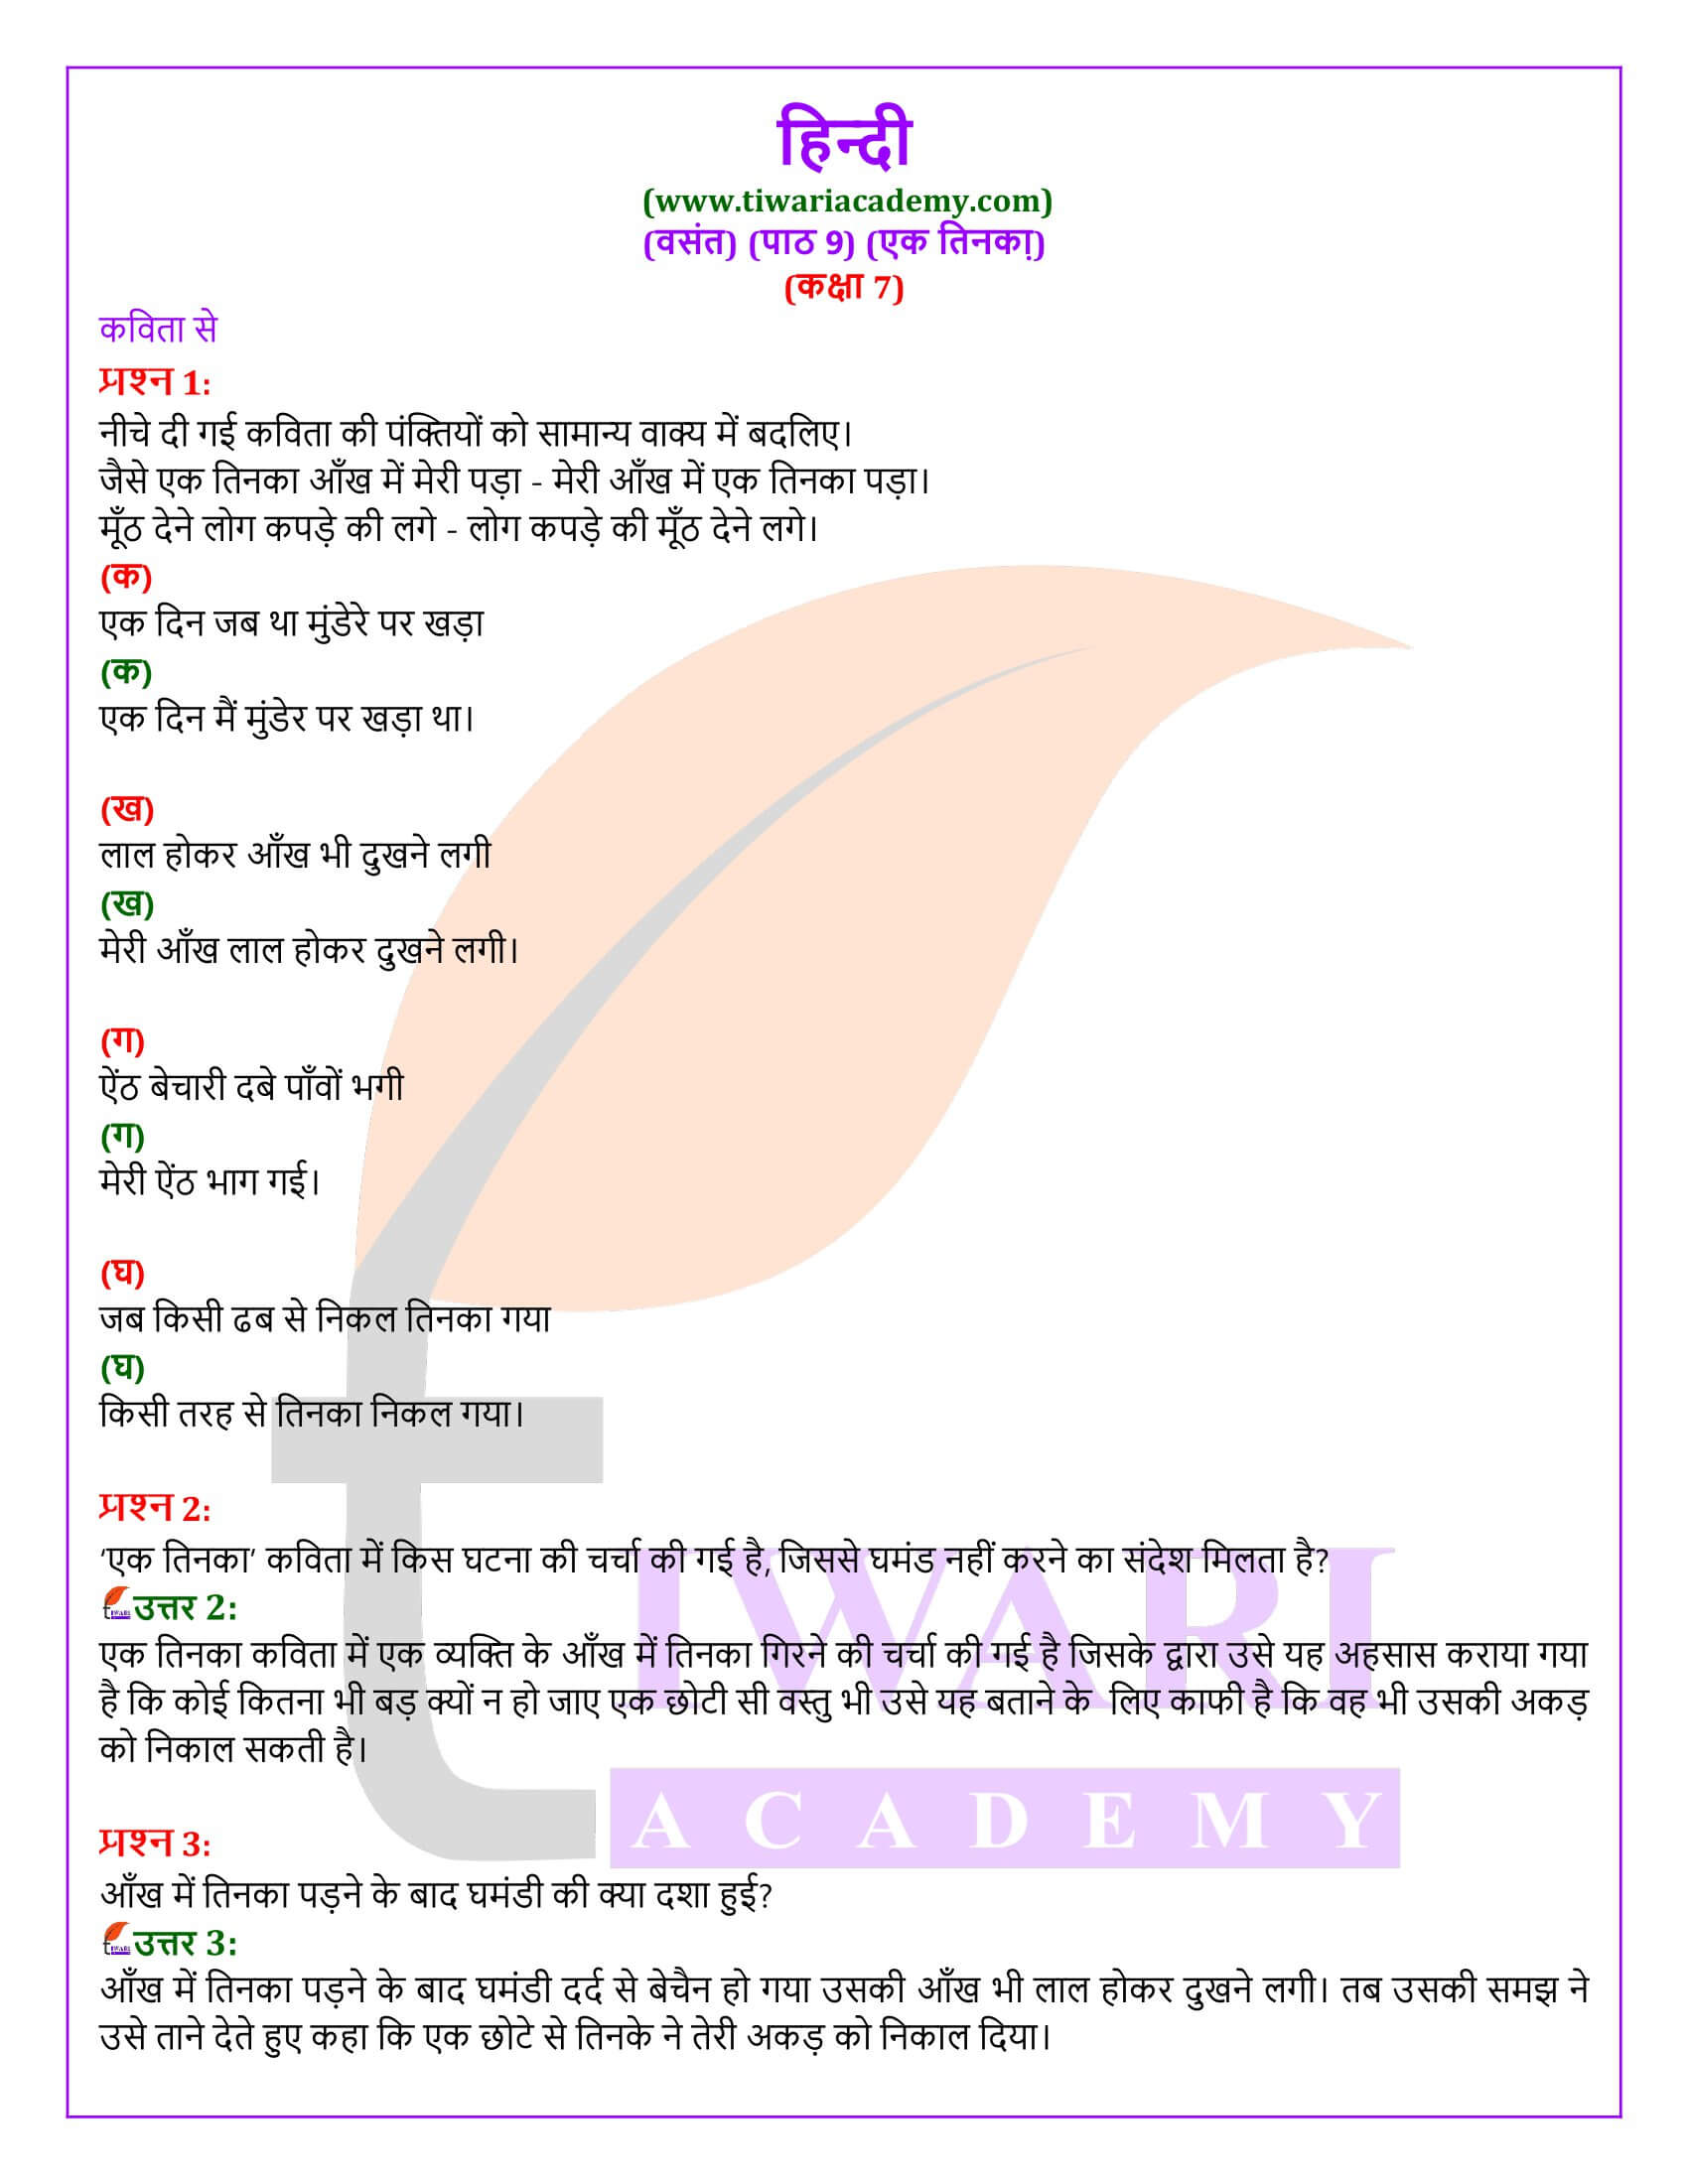 कक्षा 7 हिंदी वसंत अध्याय 9 एक तिनका के प्रश्न उत्तर